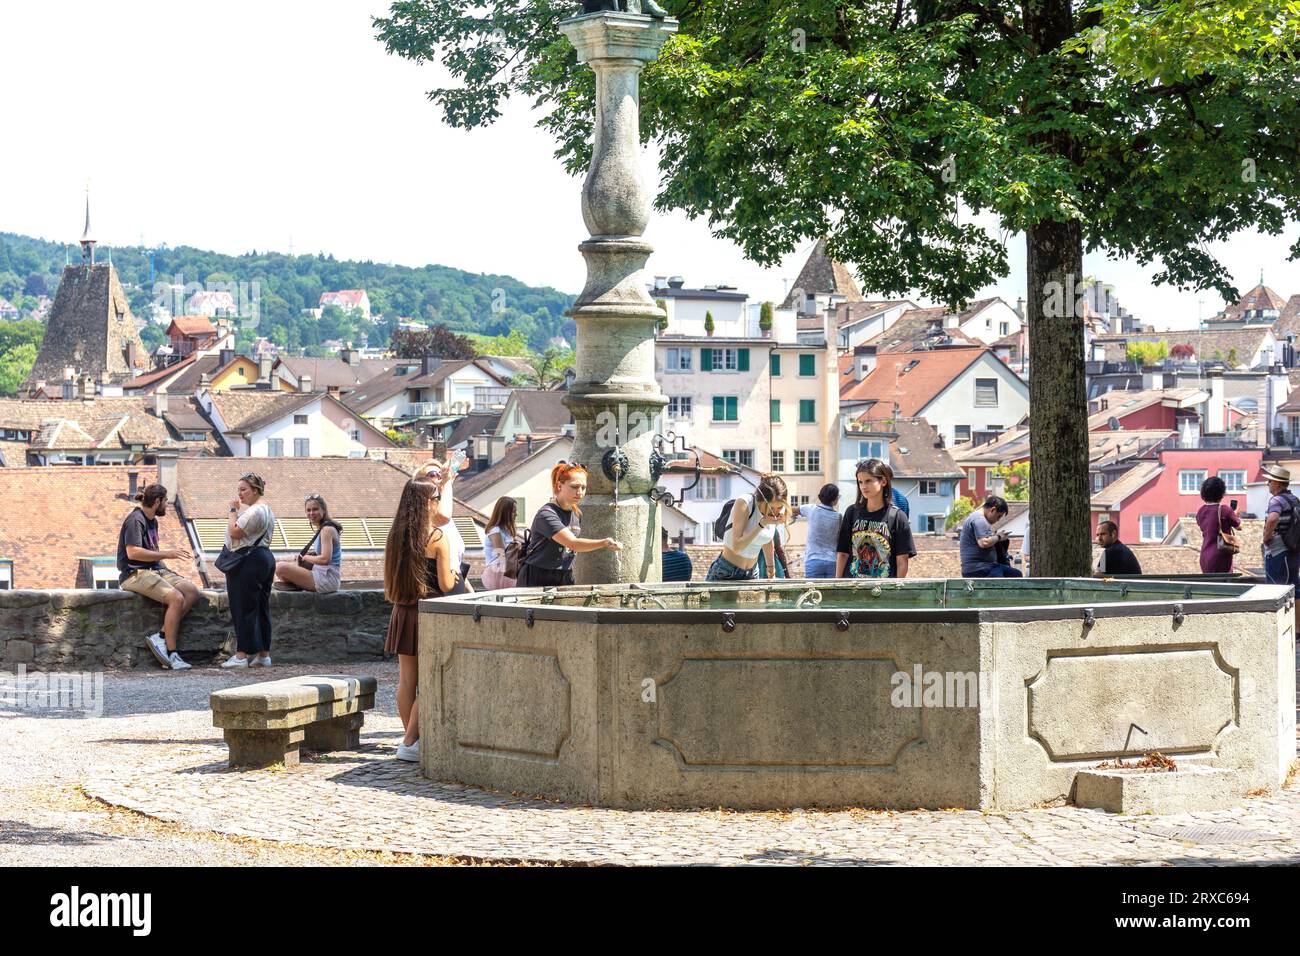 Wasserbrunnen, Lindenhof, Altstadt, Stadt Zürich, Zürich, Schweiz Stockfoto